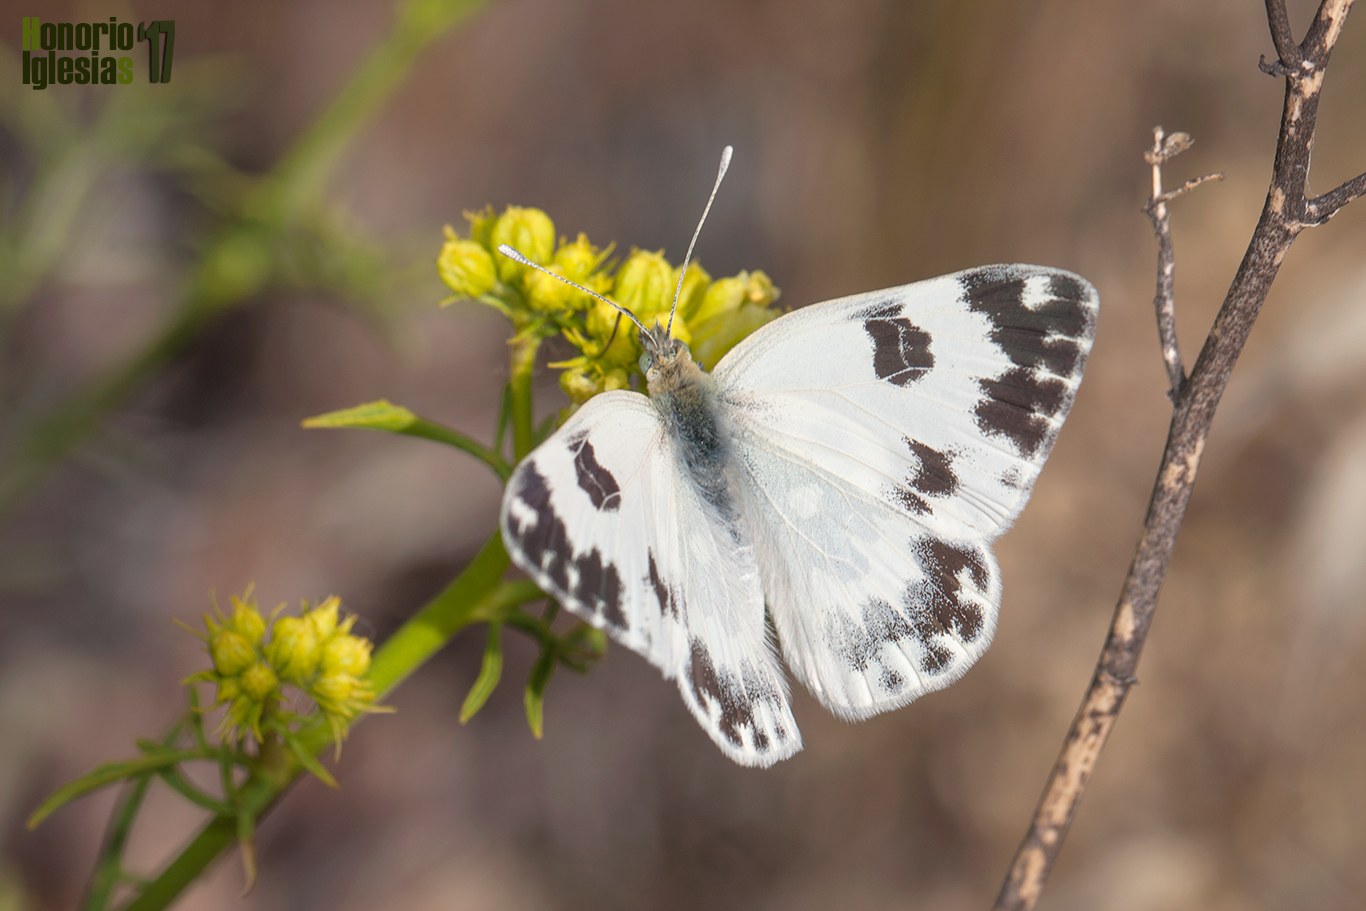 Ejemplar hembra de mariposa blanquiverdosa (Pontia daplidice), mostrando su anverso alar, el dibujo del ápice de las alas es el mismo en el reverso que el anverso lo que facilita su reconocimiento